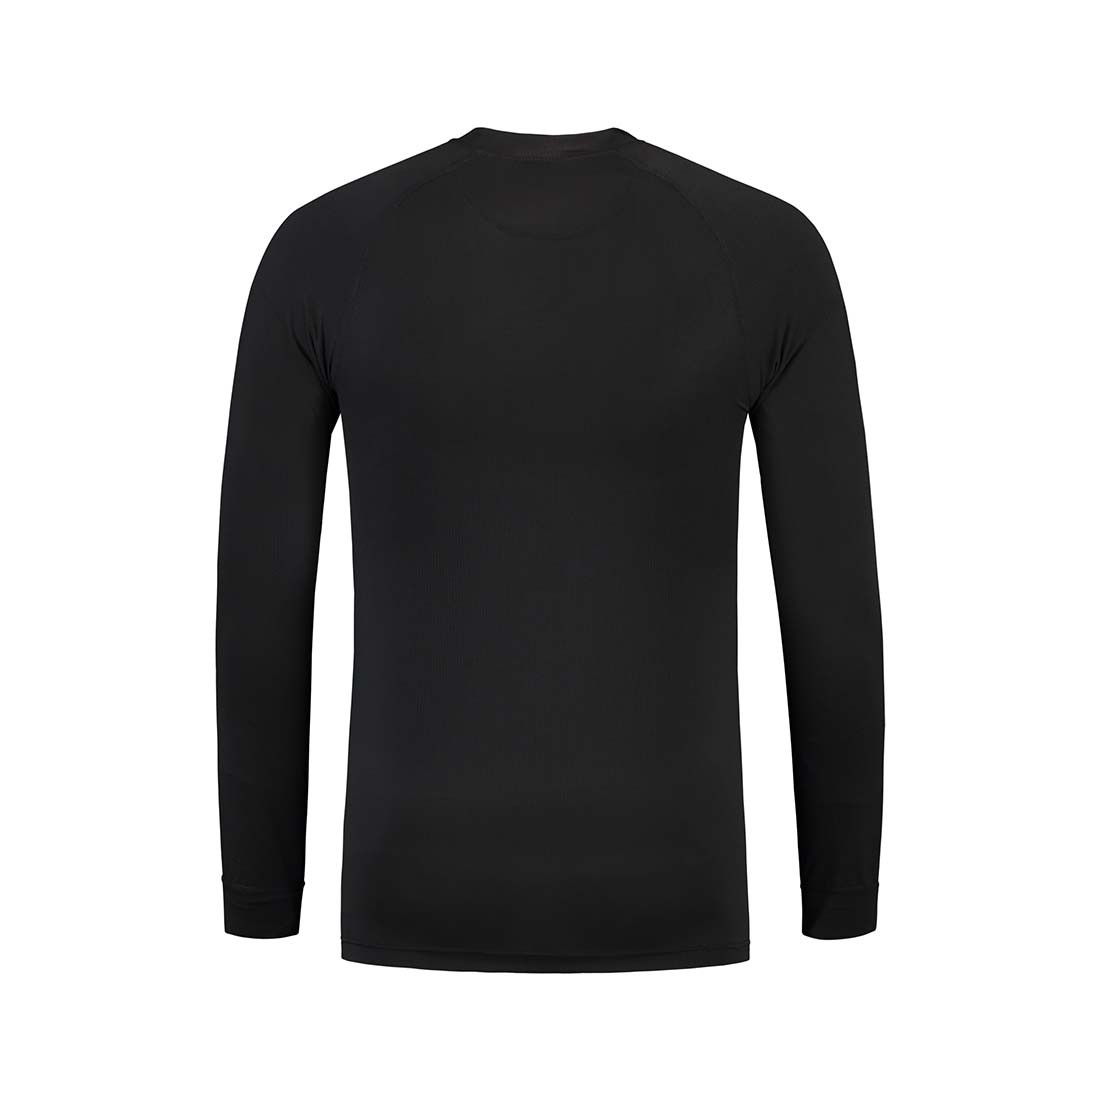 Unisex-Thermo-T-Shirt lange Ärmel - Arbeitskleidung